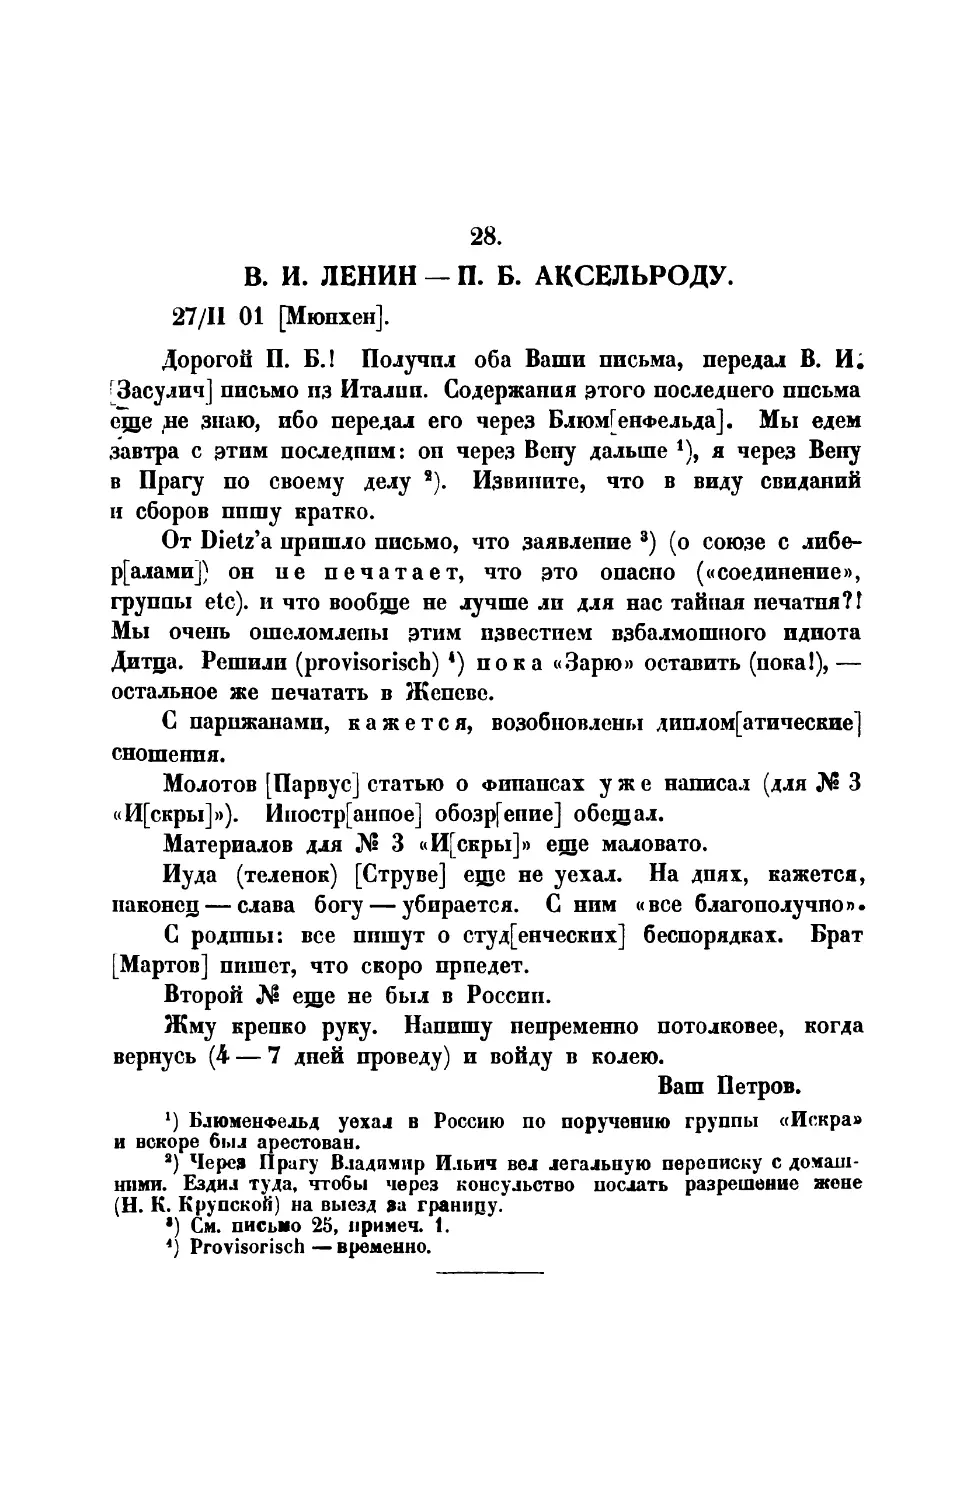 28. В. И. Ленин, — Письмо П. Б. Аксельроду от 27 II 1901 г.